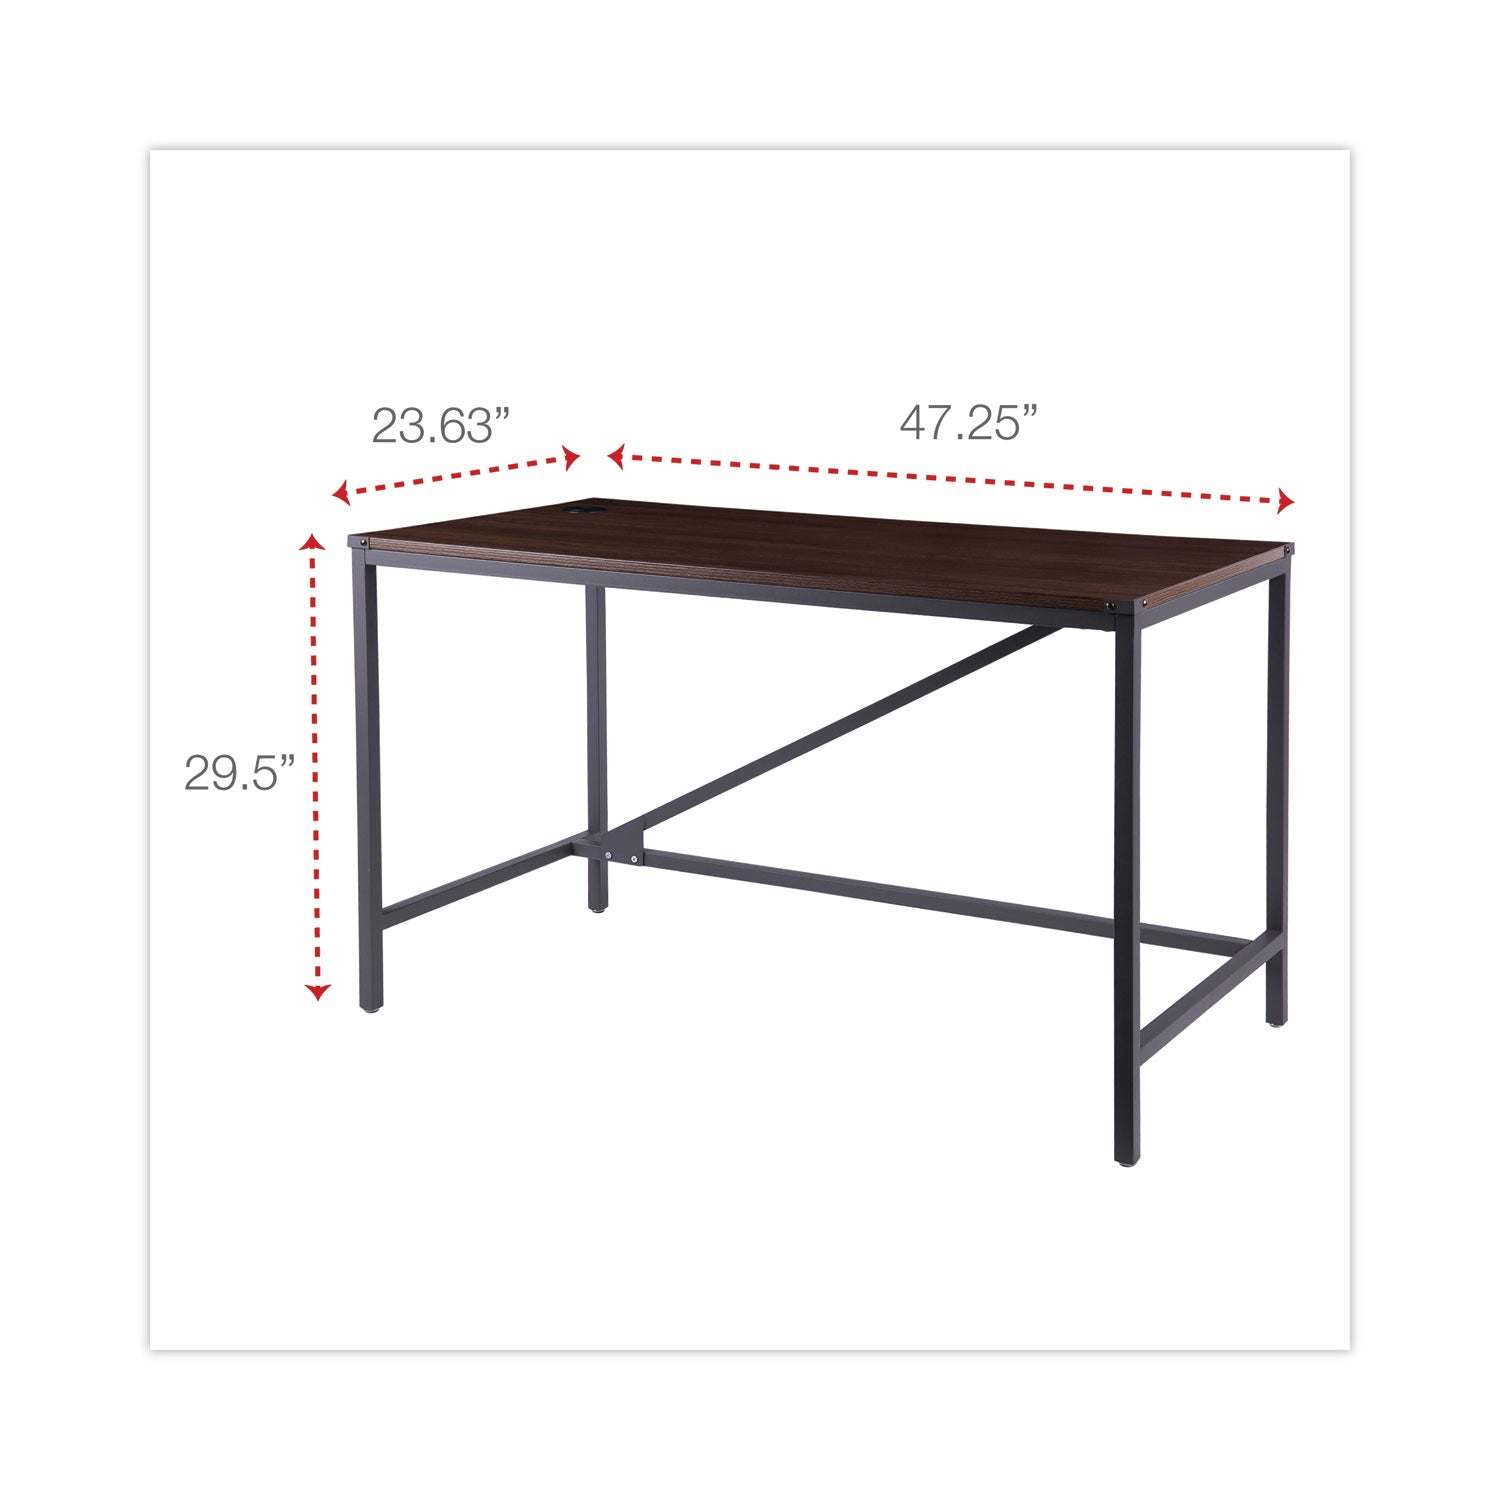 industrial-series-table-desk-4725-x-2363-x-295-modern-walnut_aleltd4824wa - 3